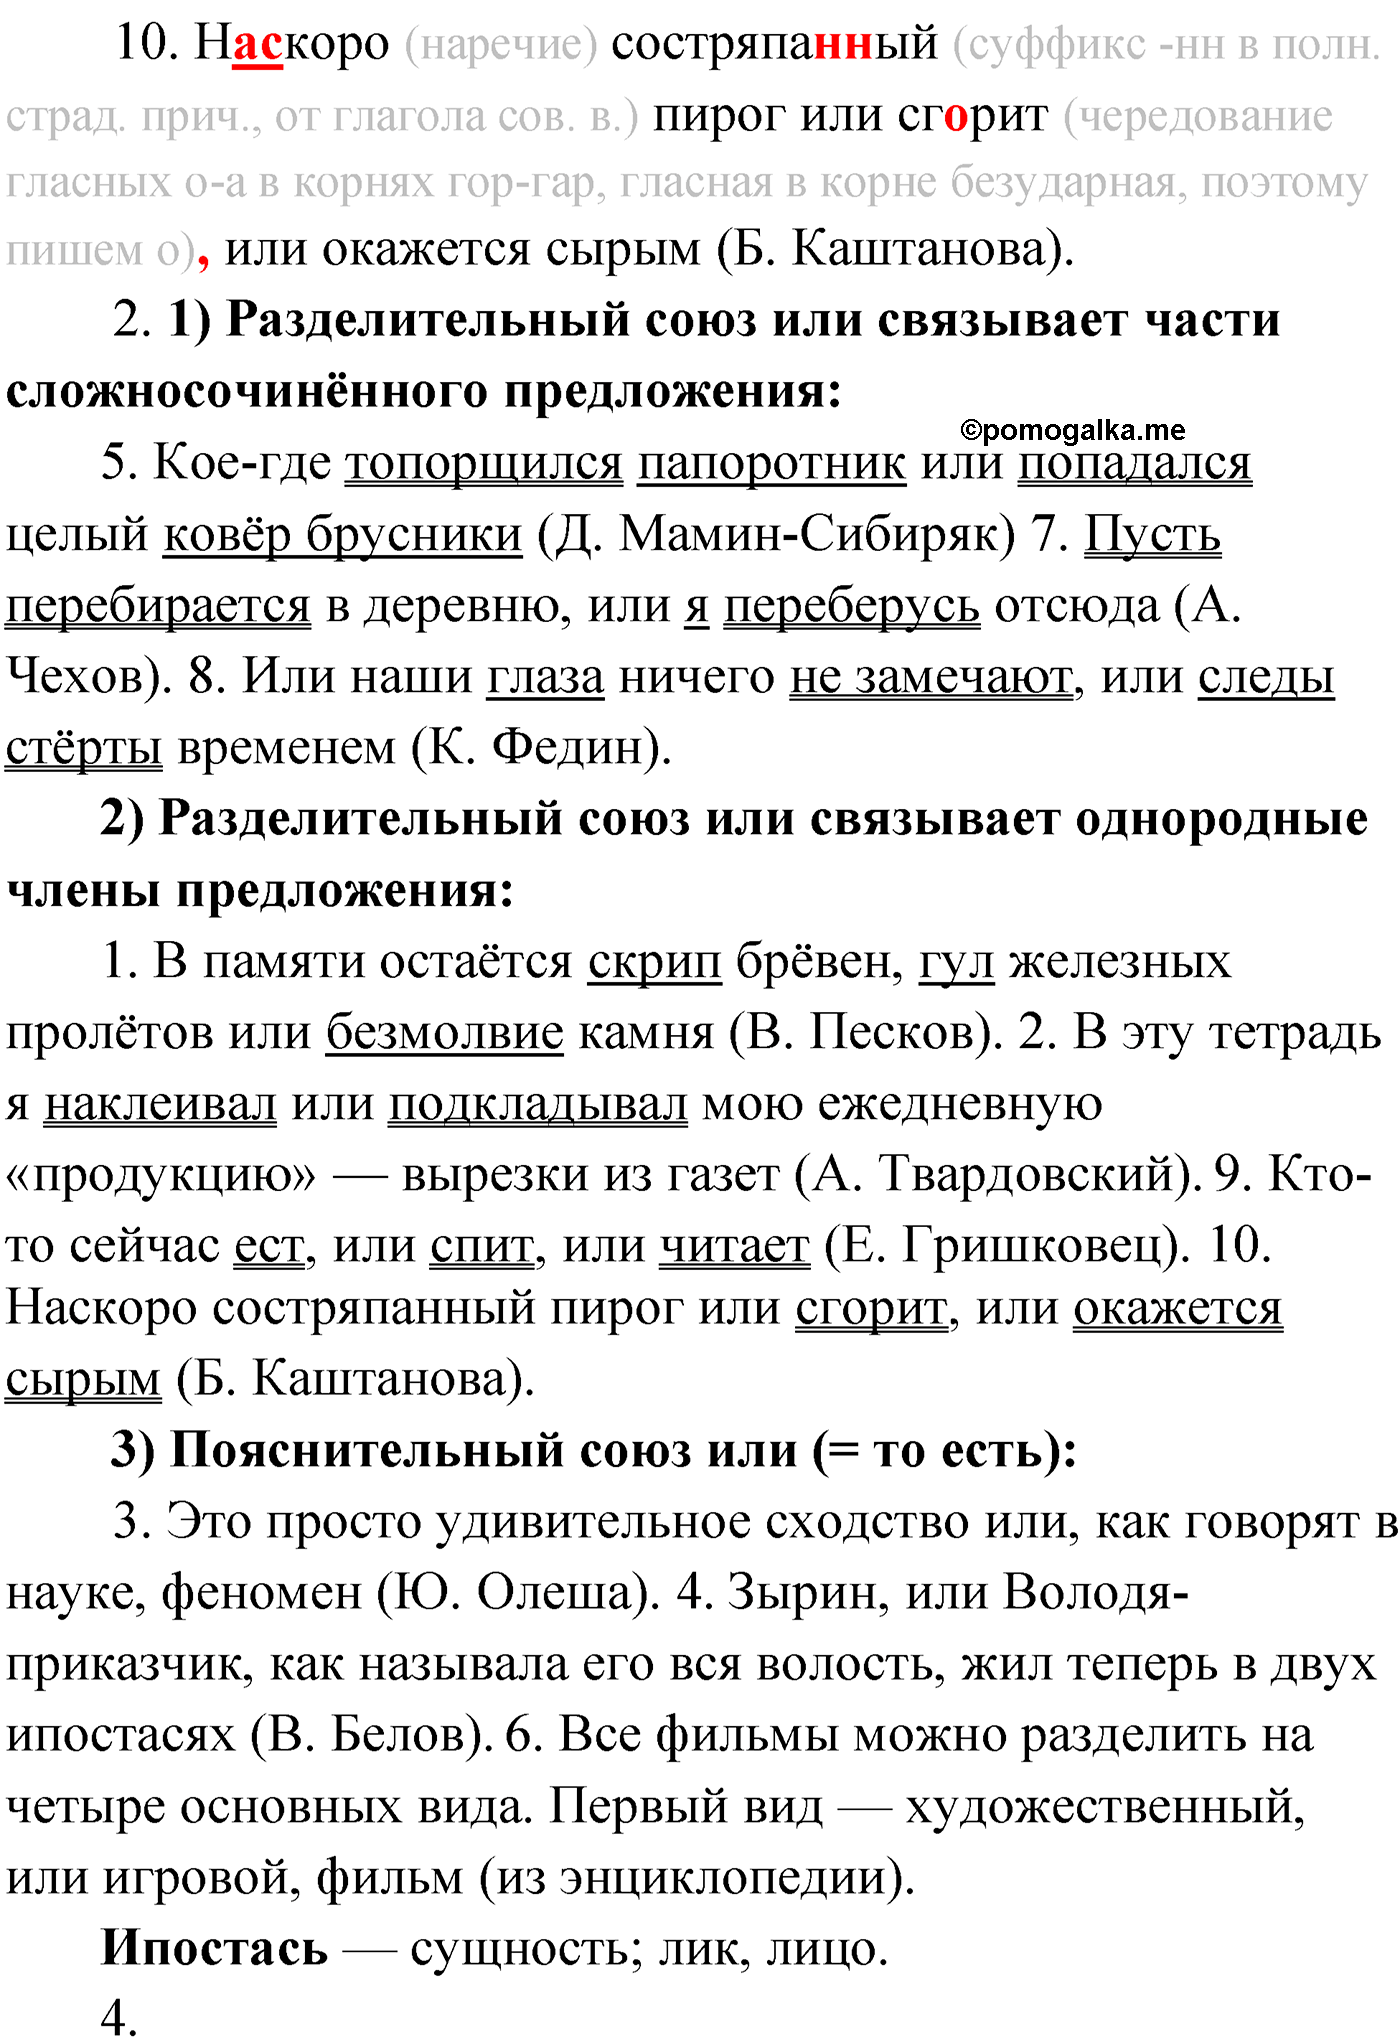 упражнение №74 русский язык 9 класс Мурина 2019 год